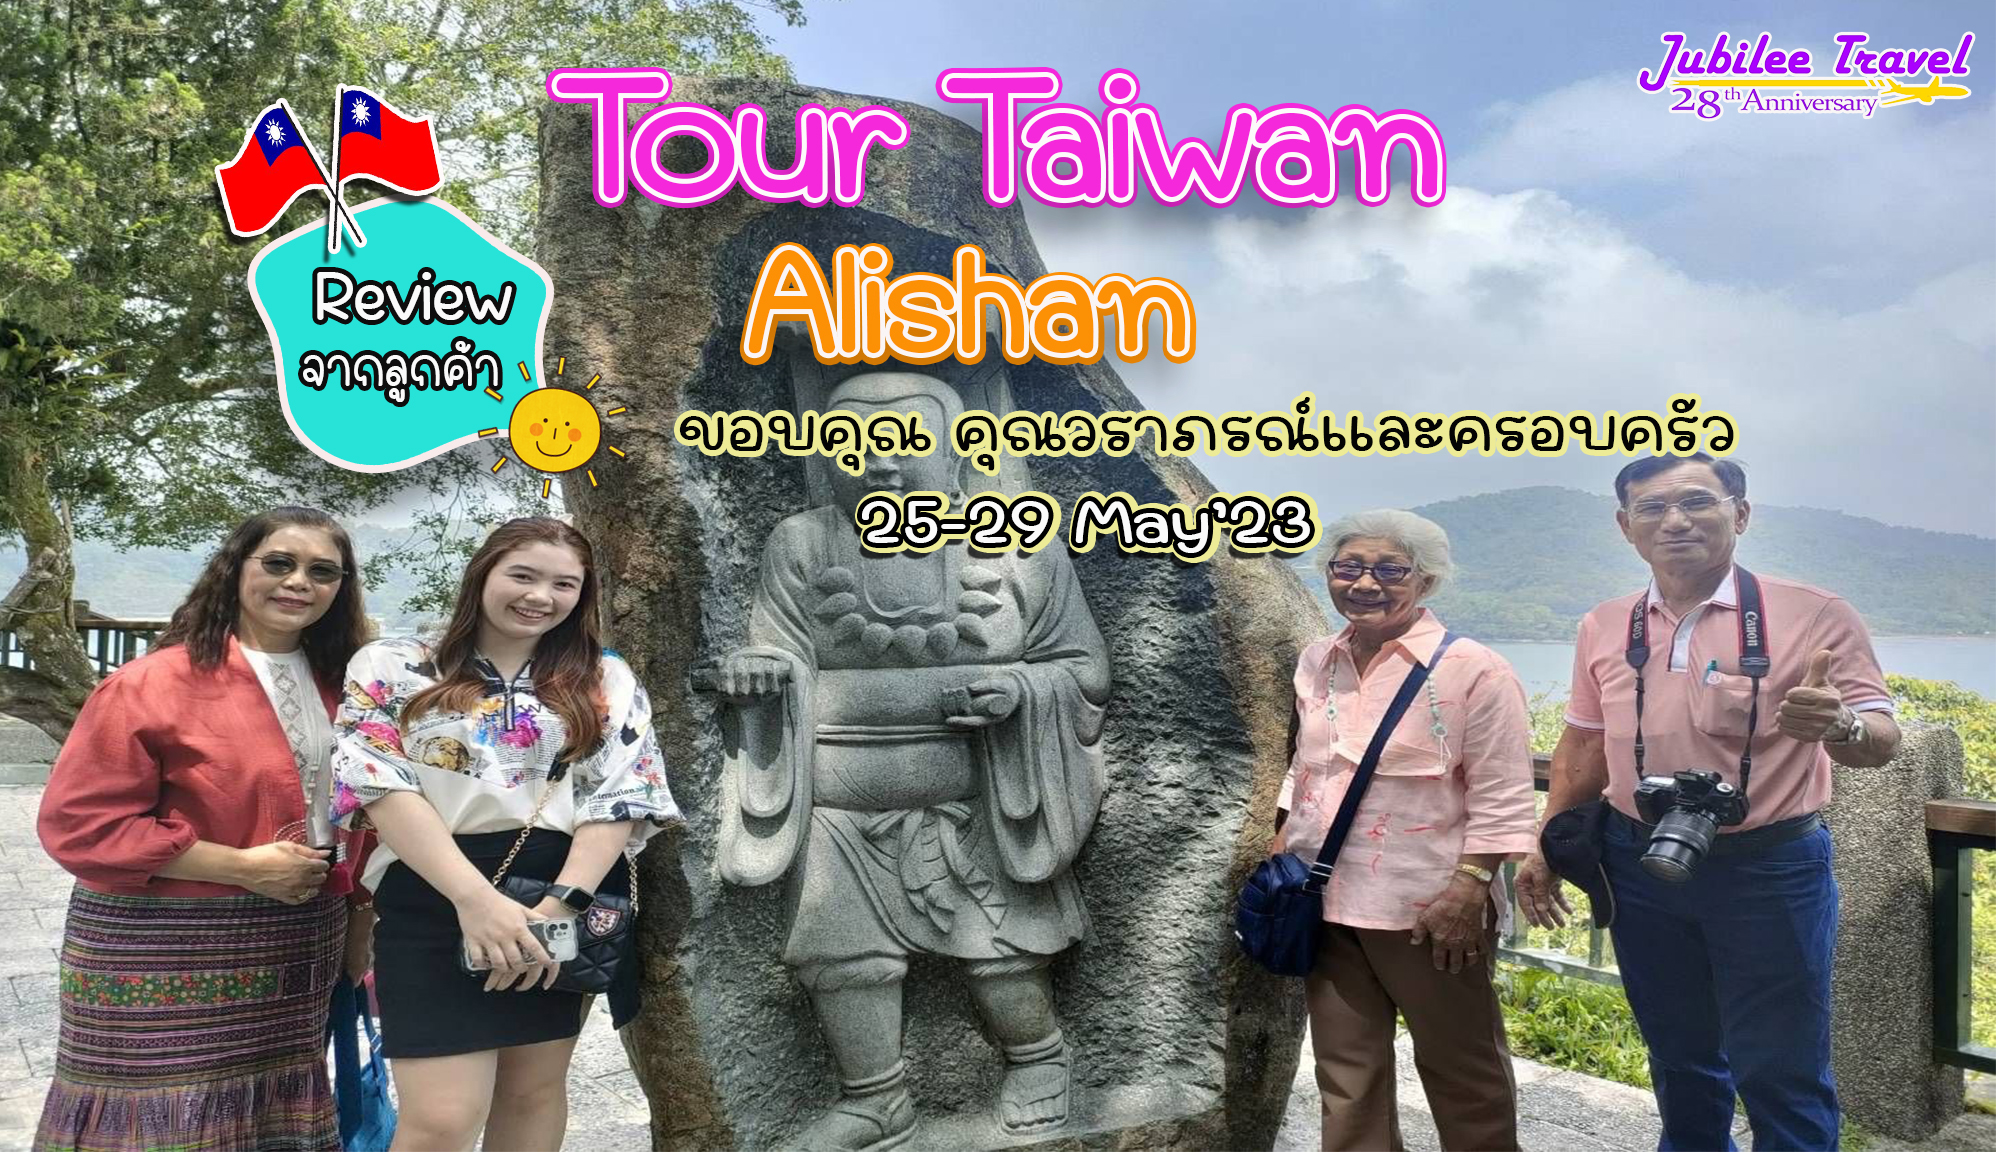 รีวิวจากลูกค้าขอบคุณ คุณวราภรณ์ และครอบครัว Tour Taiwan Alishan 25-29 May’23